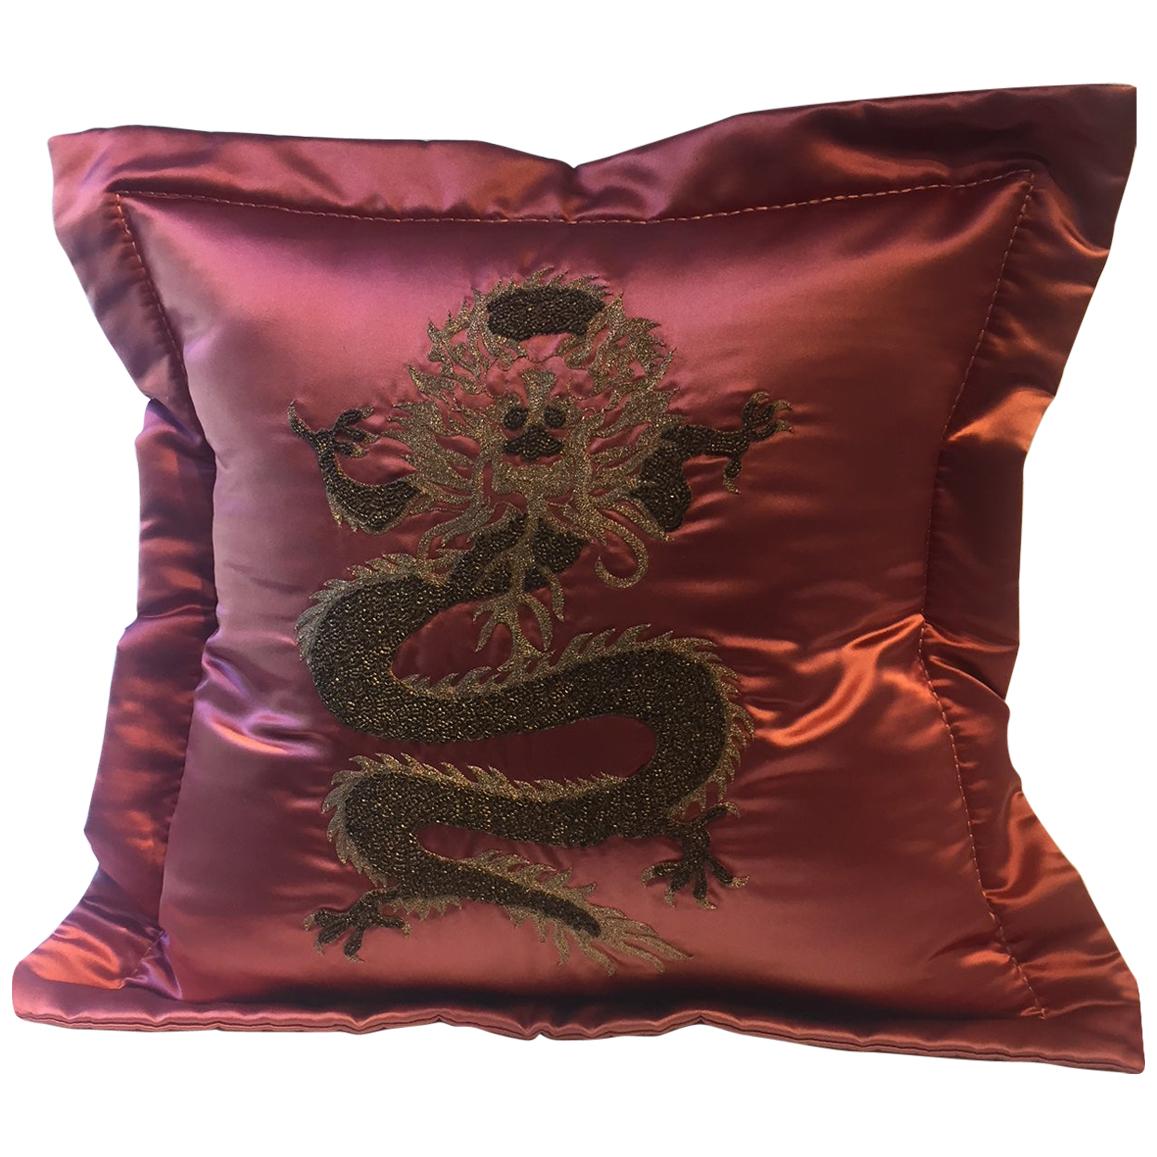 Coussin dragon Design/One Couleur rouge fraise Broderie à la main